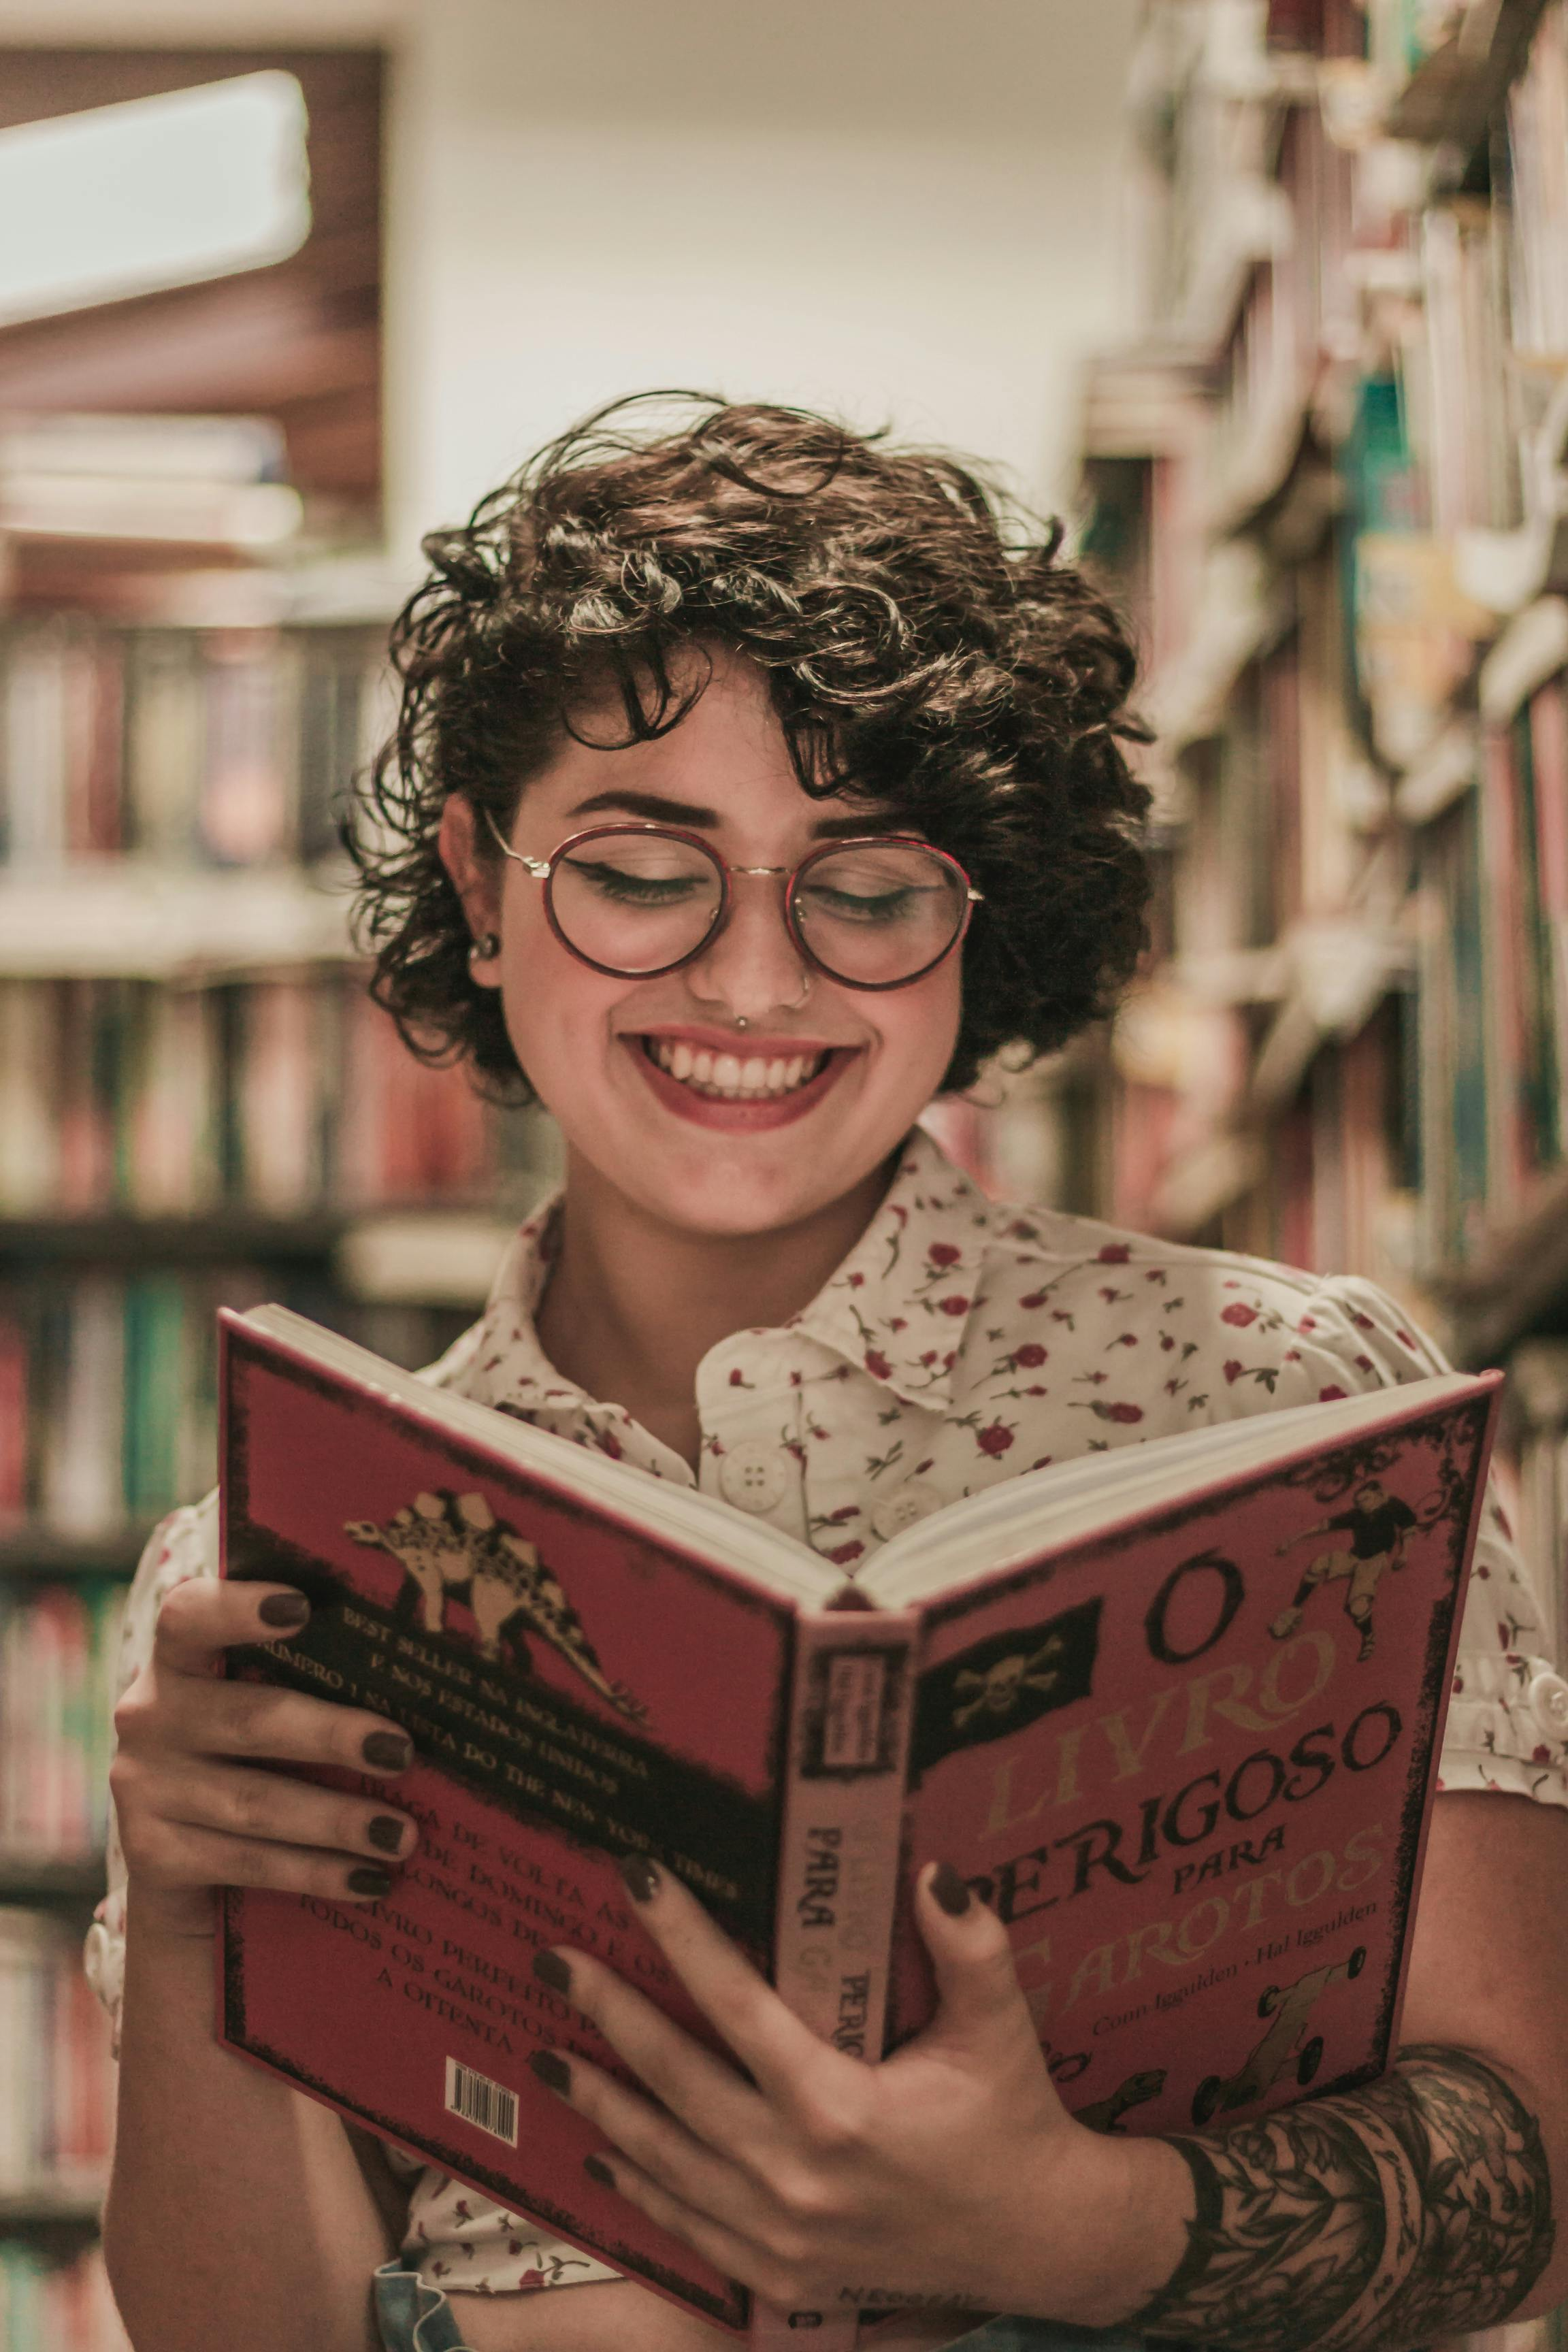 Eine junge Frau liest lächelnd in einem Buch. Sie steht vor einem Bücherregal.